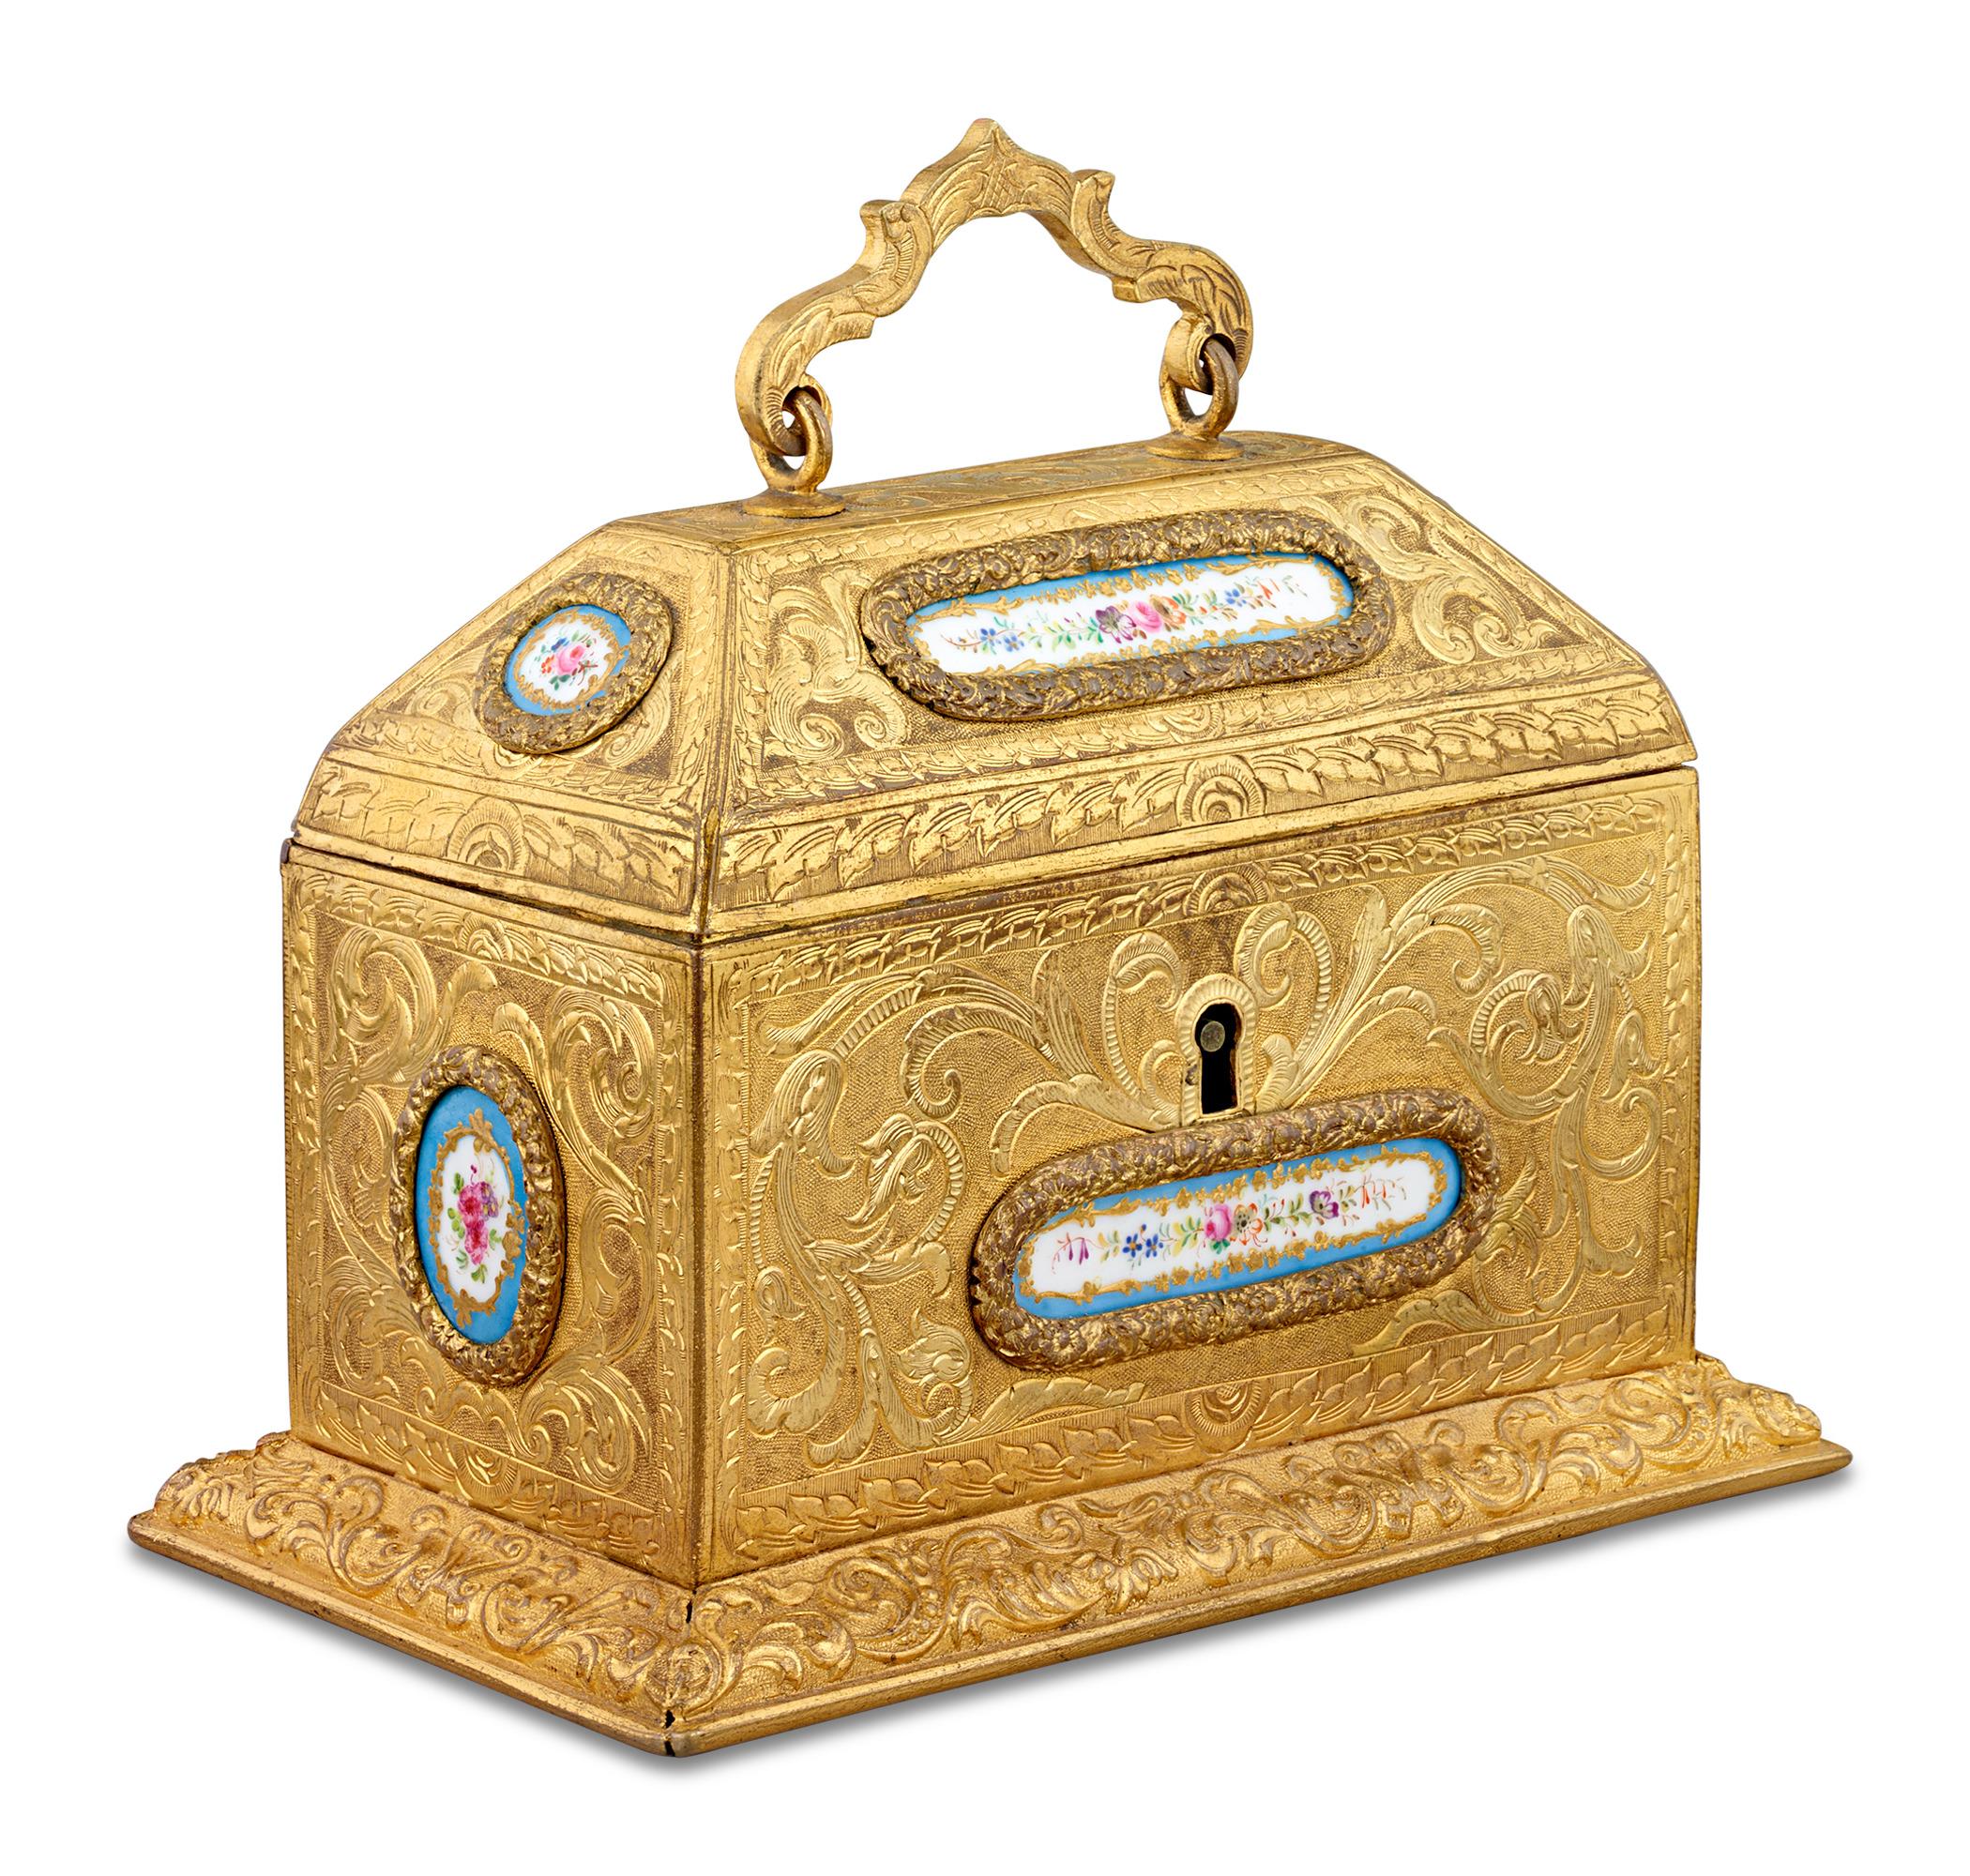 Sept plaques resplendissantes en porcelaine de Sèvres entourent cette magnifique boîte en bronze doré. Le motif floral lumineux des plaques s'harmonise parfaitement avec le bronze ciselé, gravé et appliqué. La demande d'objets d'art montés sur